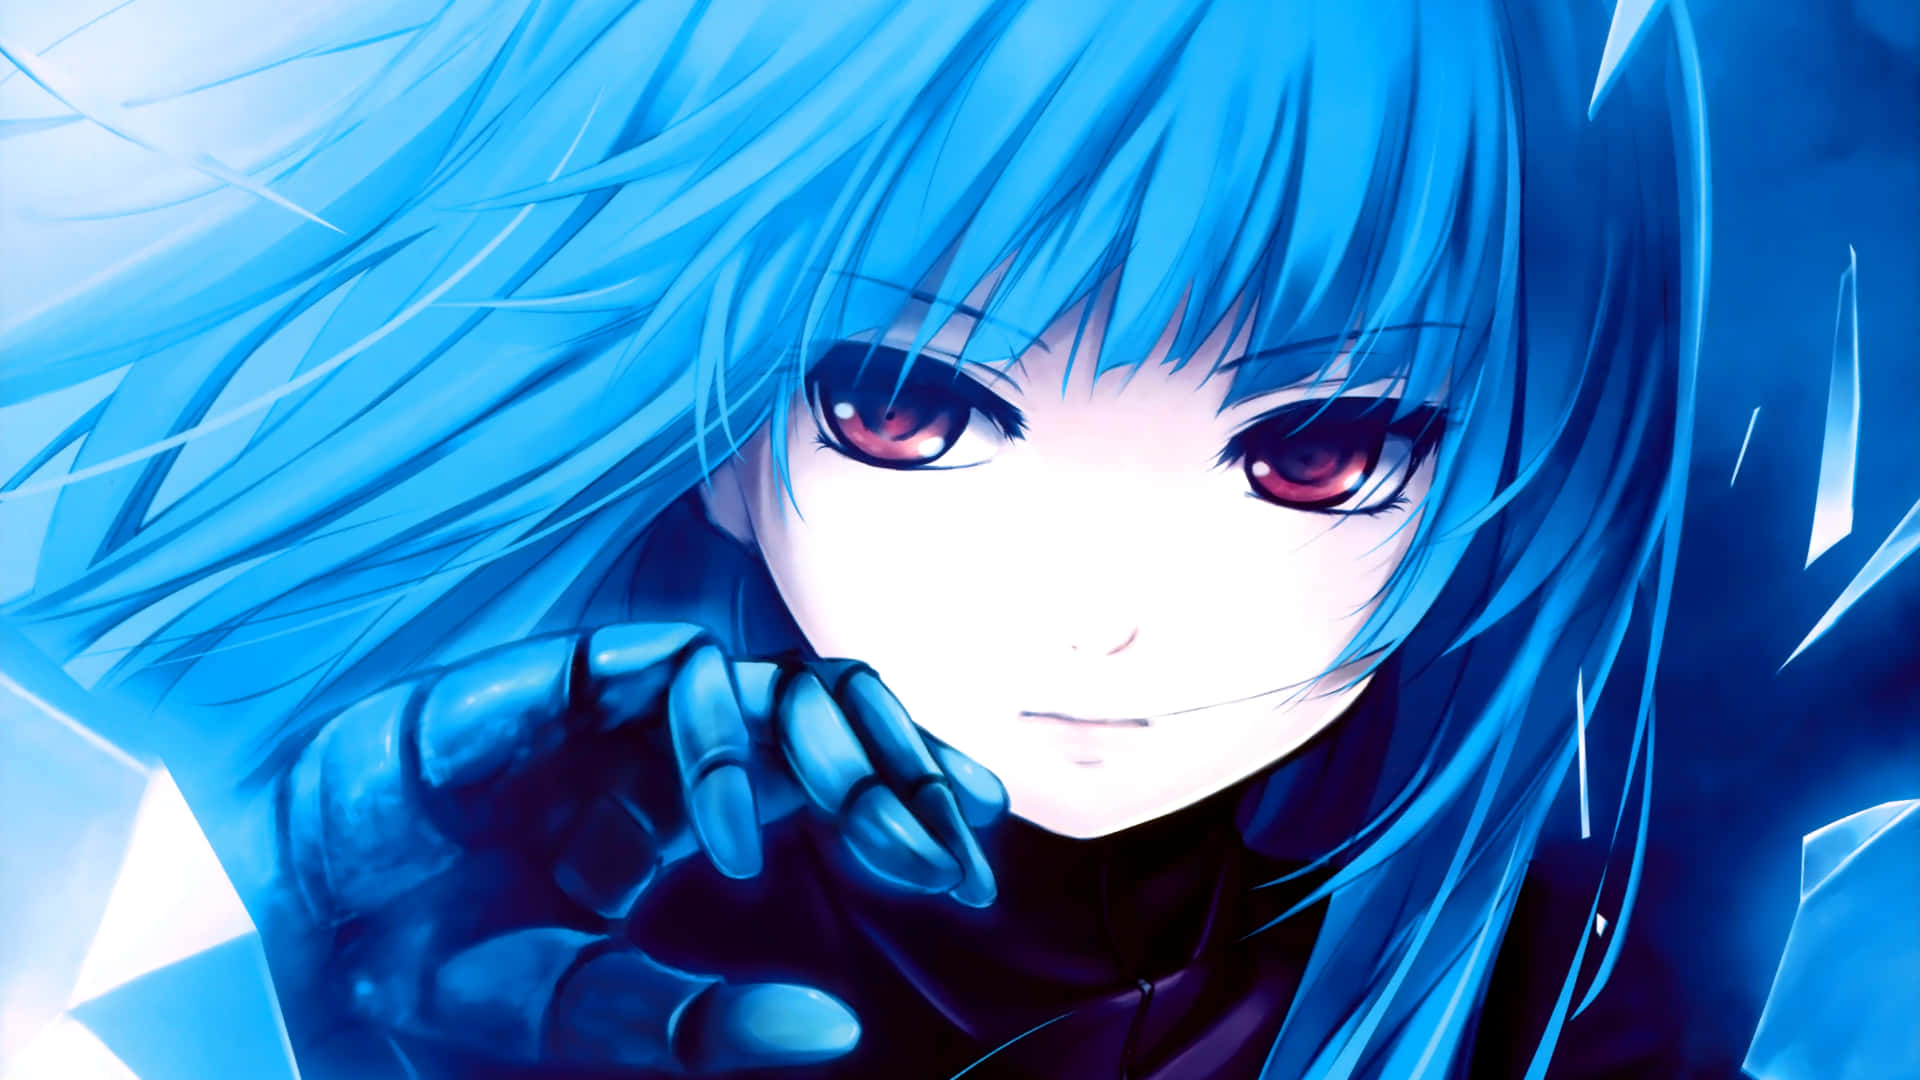 Chicade Anime Genial Con Cabello Azul Y Ojos Negros. Fondo de pantalla